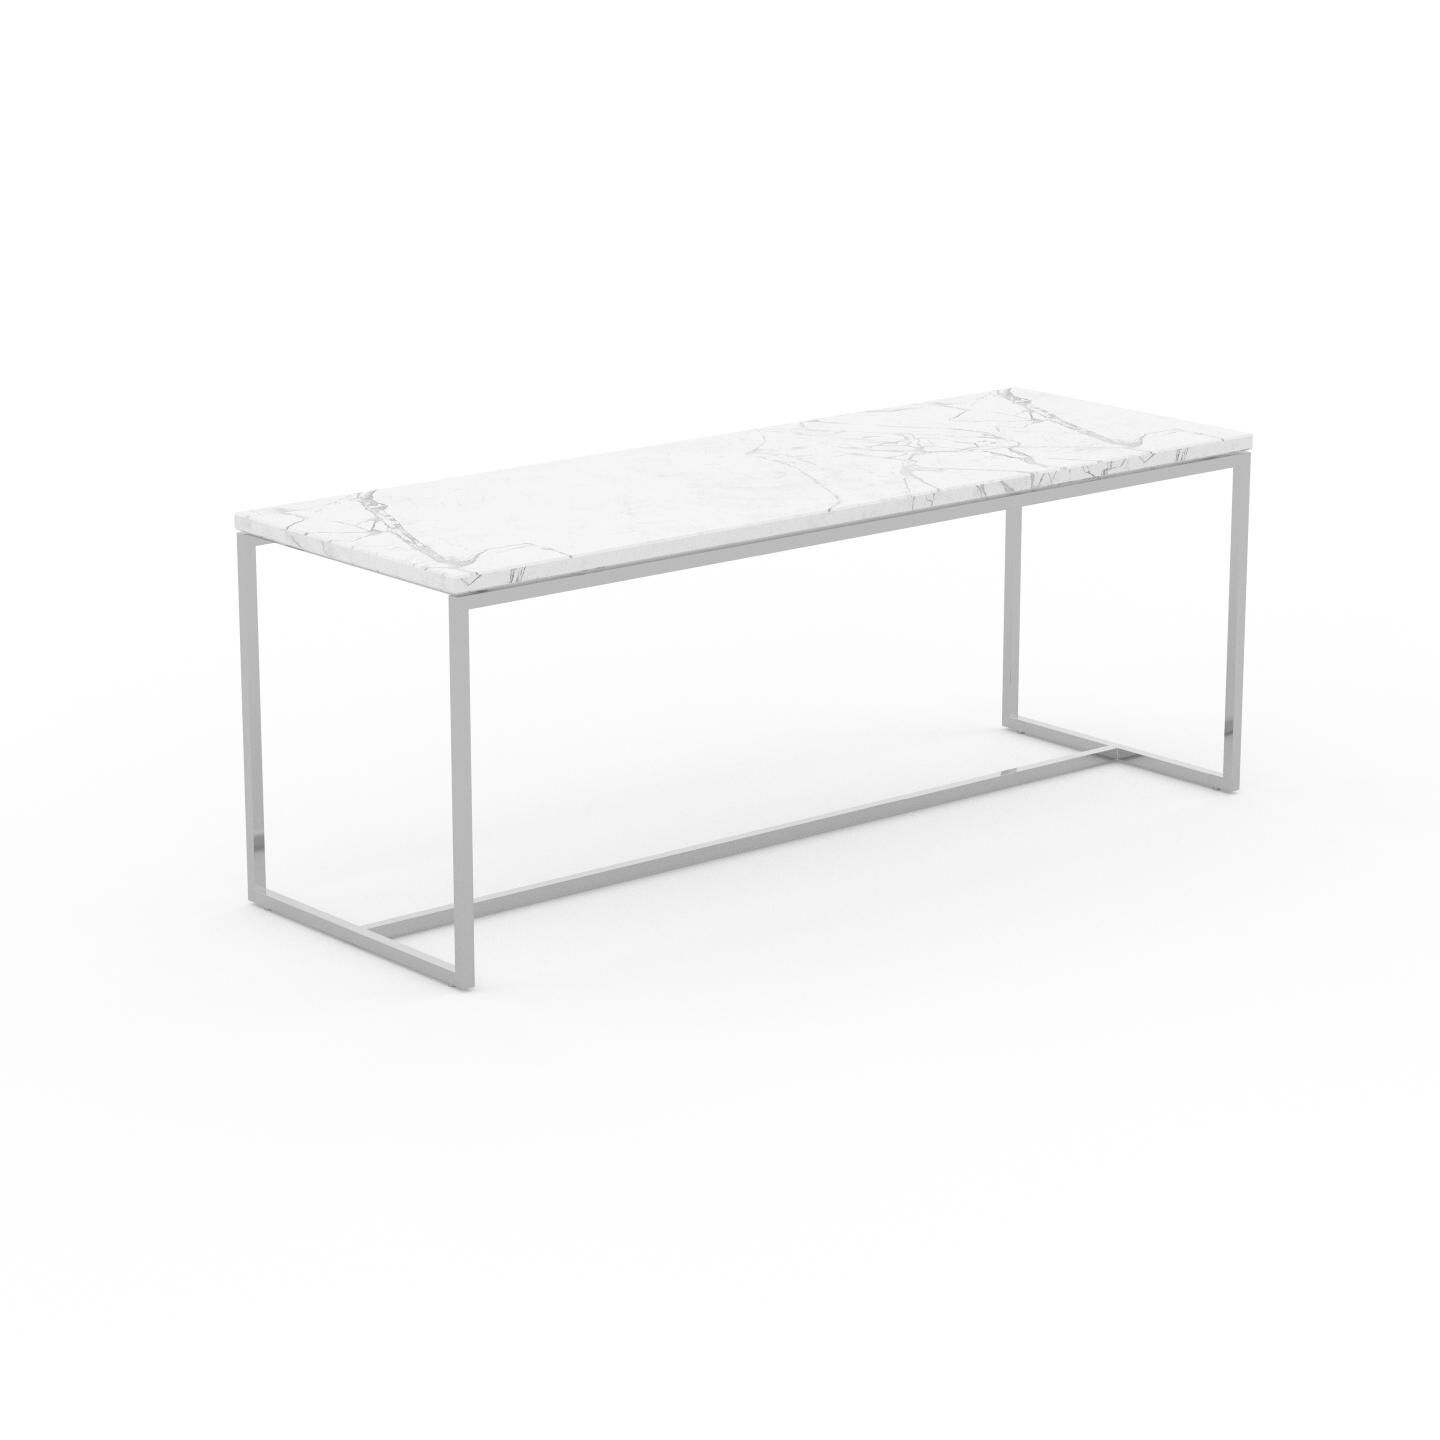 MYCS Beistelltisch Marmor, Weißer Carrara - Eleganter Nachttisch: Hochwertige Materialien, einzigartiges Design - 121 x 46 x 42 cm, Komplett anpassbar